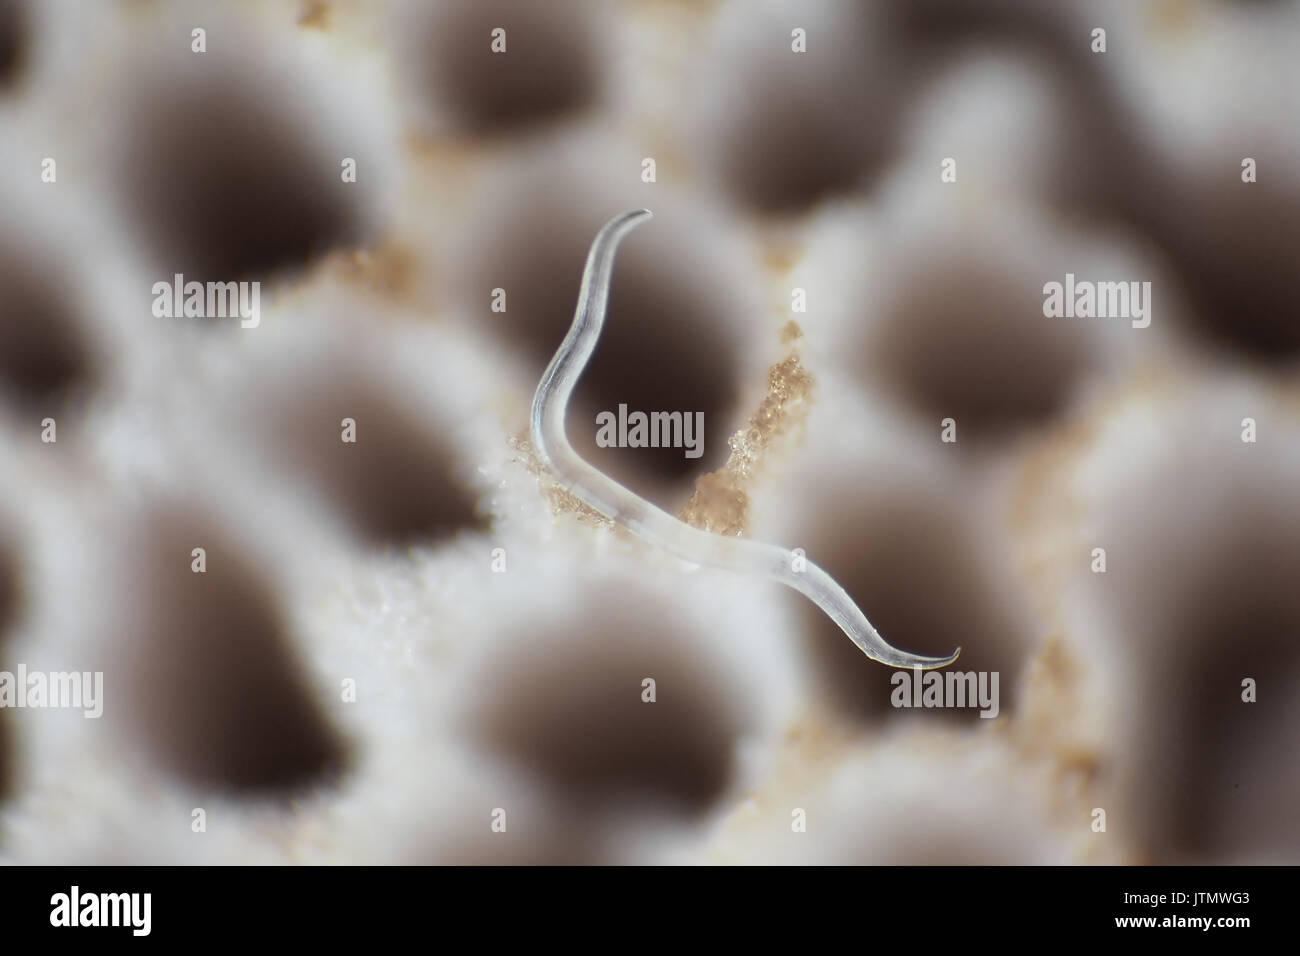 Diminuto nematodo (0,9 mm de longitud) en el hongo polypore poros, micrografía de luz reflejada, 67x de ampliación cuando imprime 10cm de ancho Foto de stock